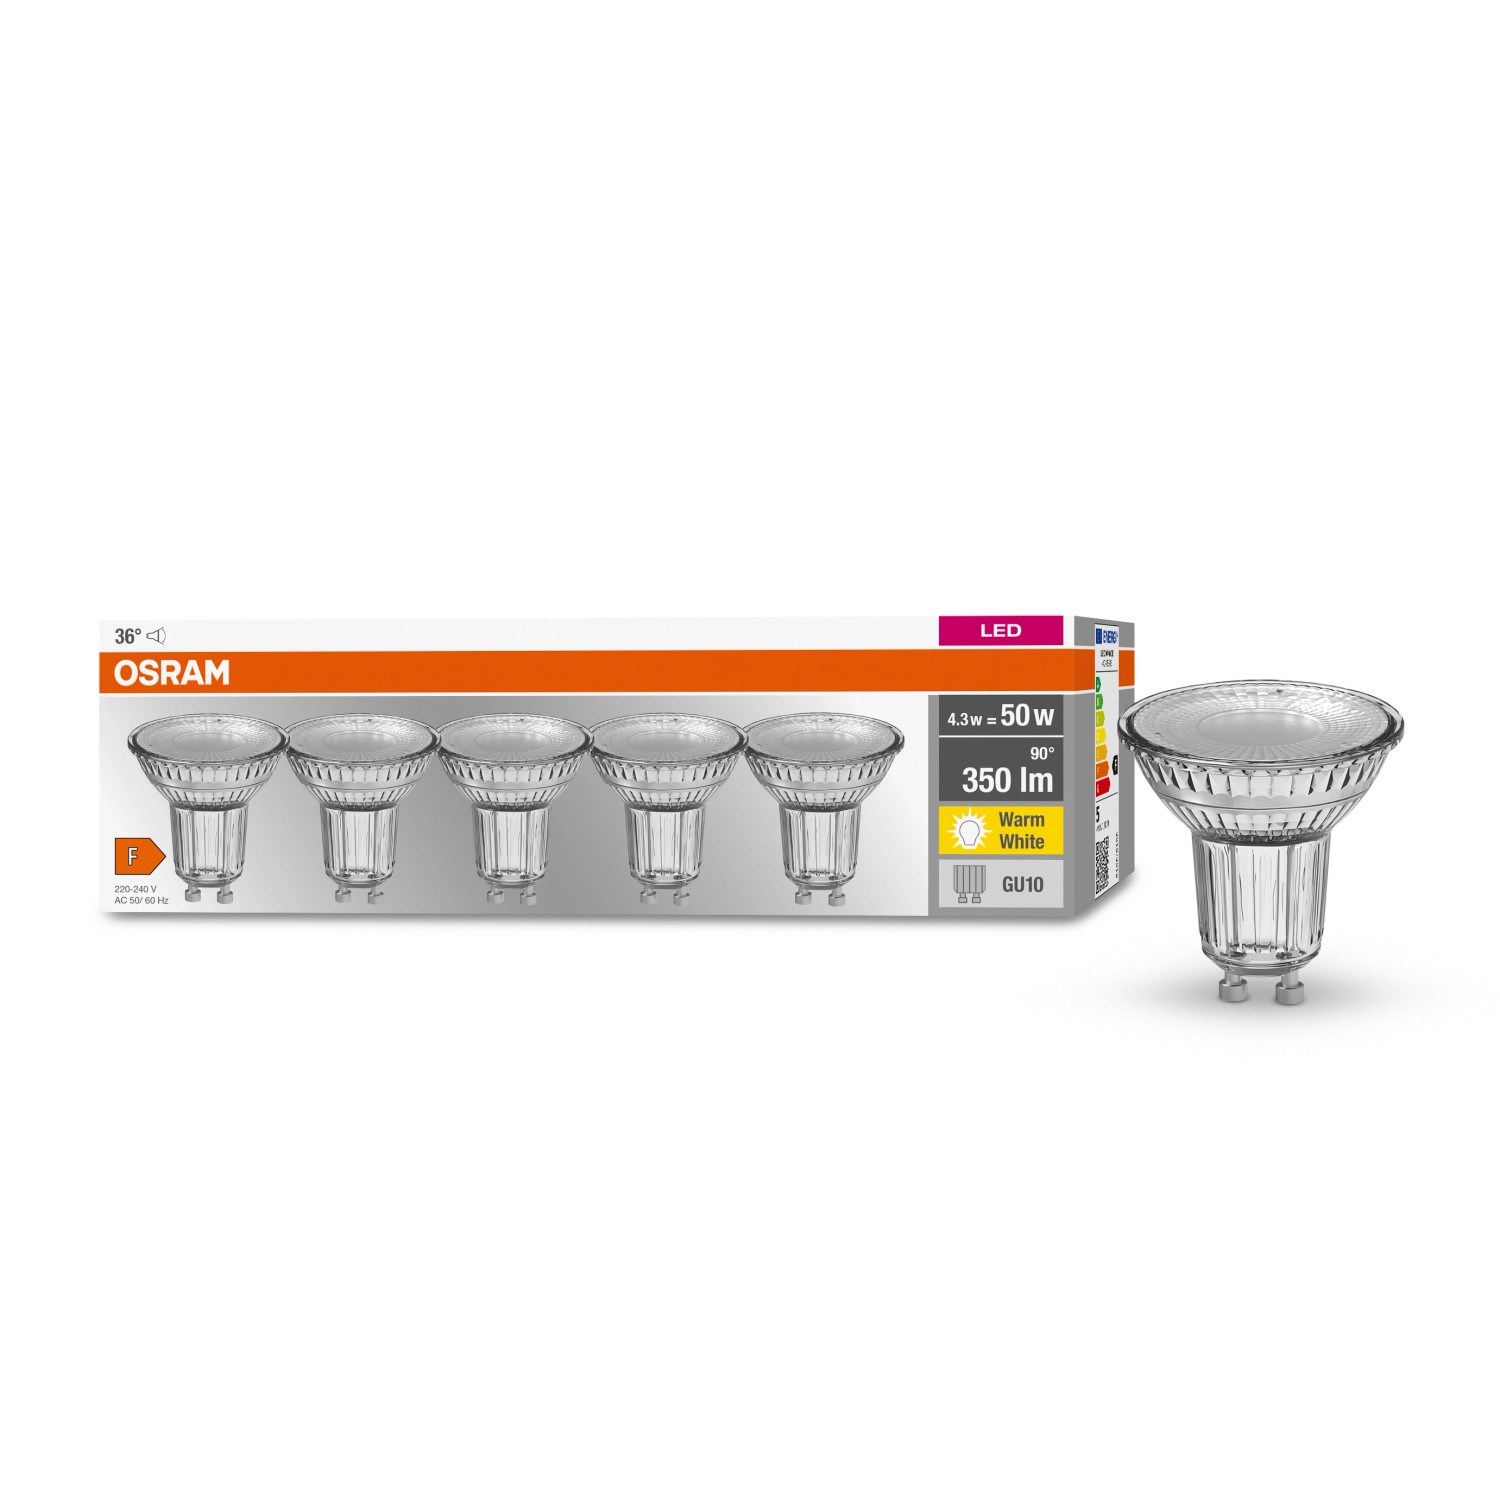 Osram LED-Leuchtmittel GU10 4,3 W Warmweiß 350 lm 5er Set 5,2 x 5 cm (H x Ø)